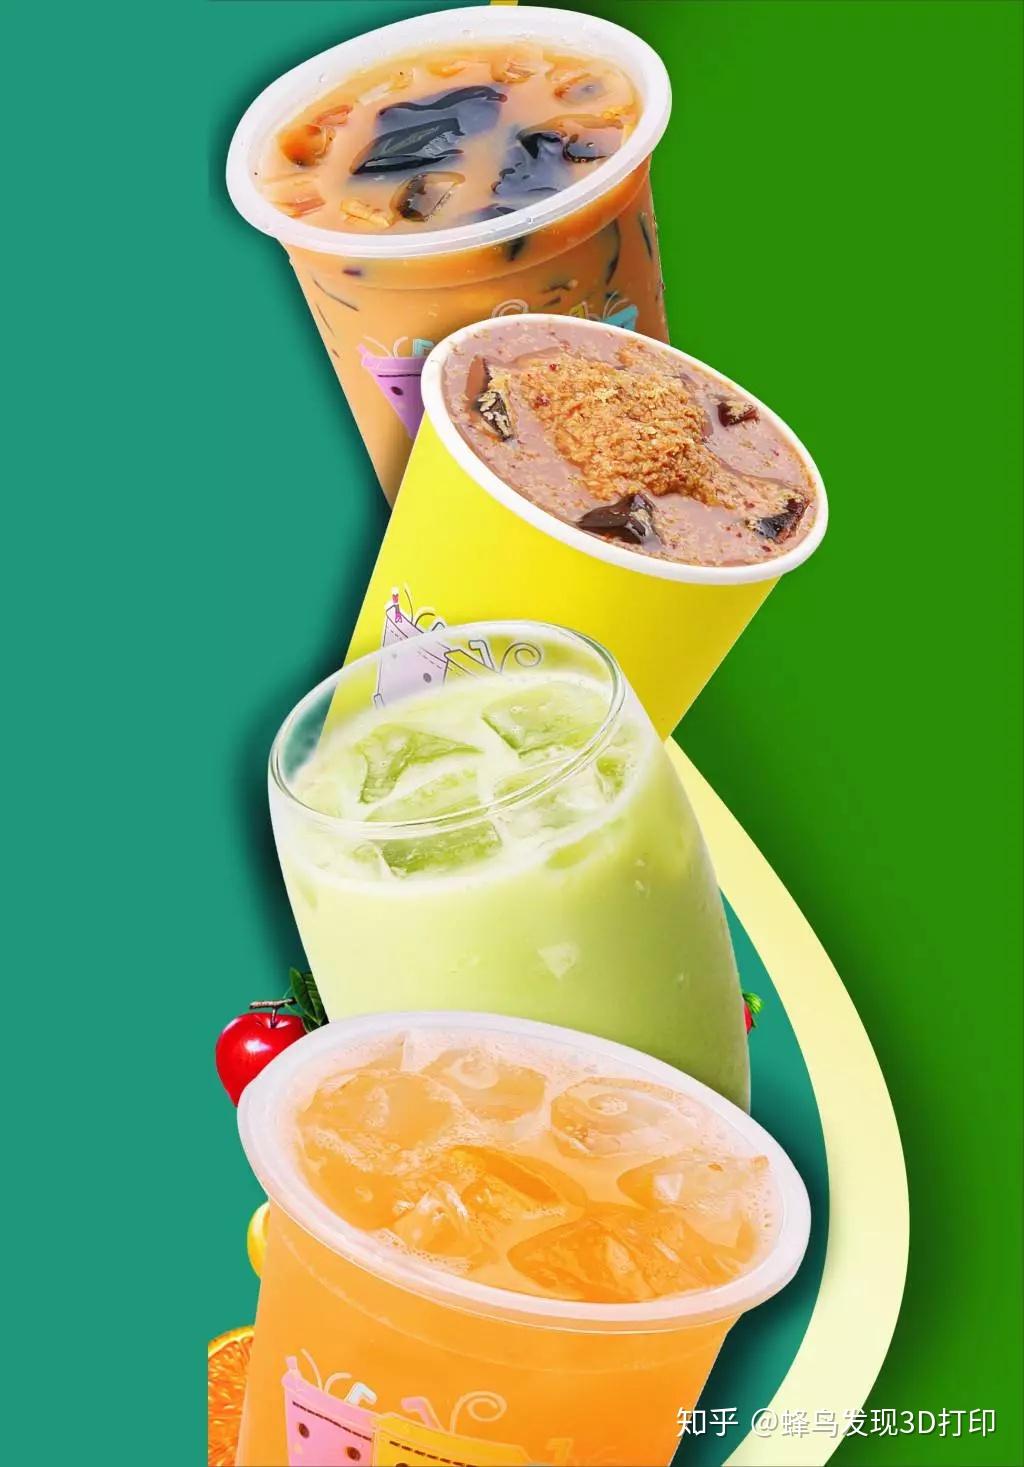 宁波市场消保委人员对10个网红品牌奶茶样品做了检测,一杯奶茶的含糖